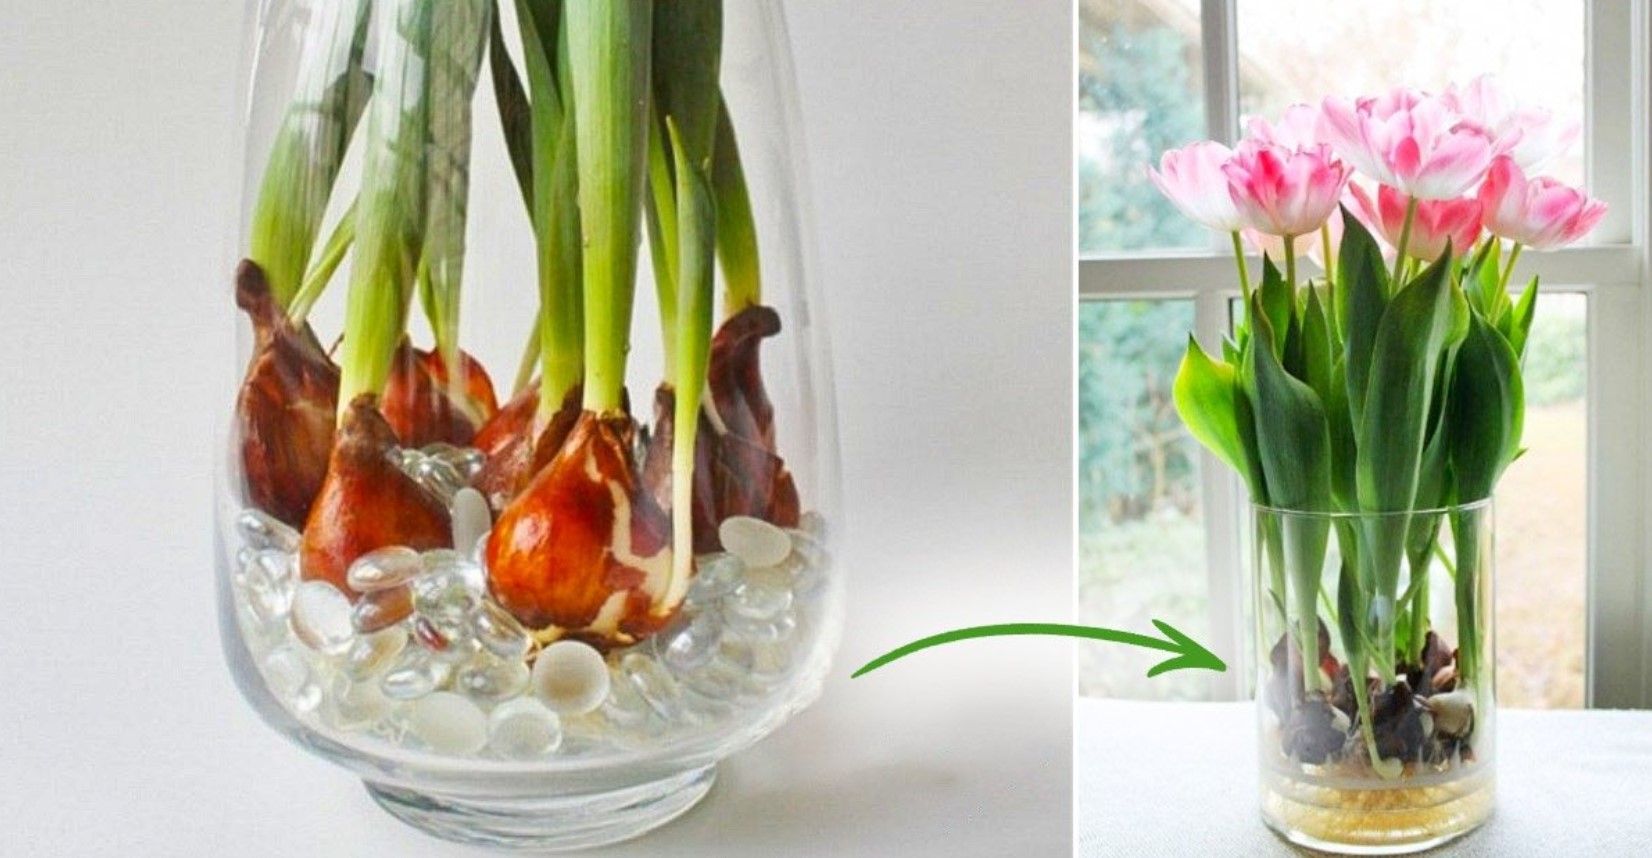 Выращивание тюльпанов в домашних условиях на продажу. Вырастить тюльпаны дома. Выращивание тюльпанов в домашних условиях. Вырастить тюльпаны в домашних условиях.